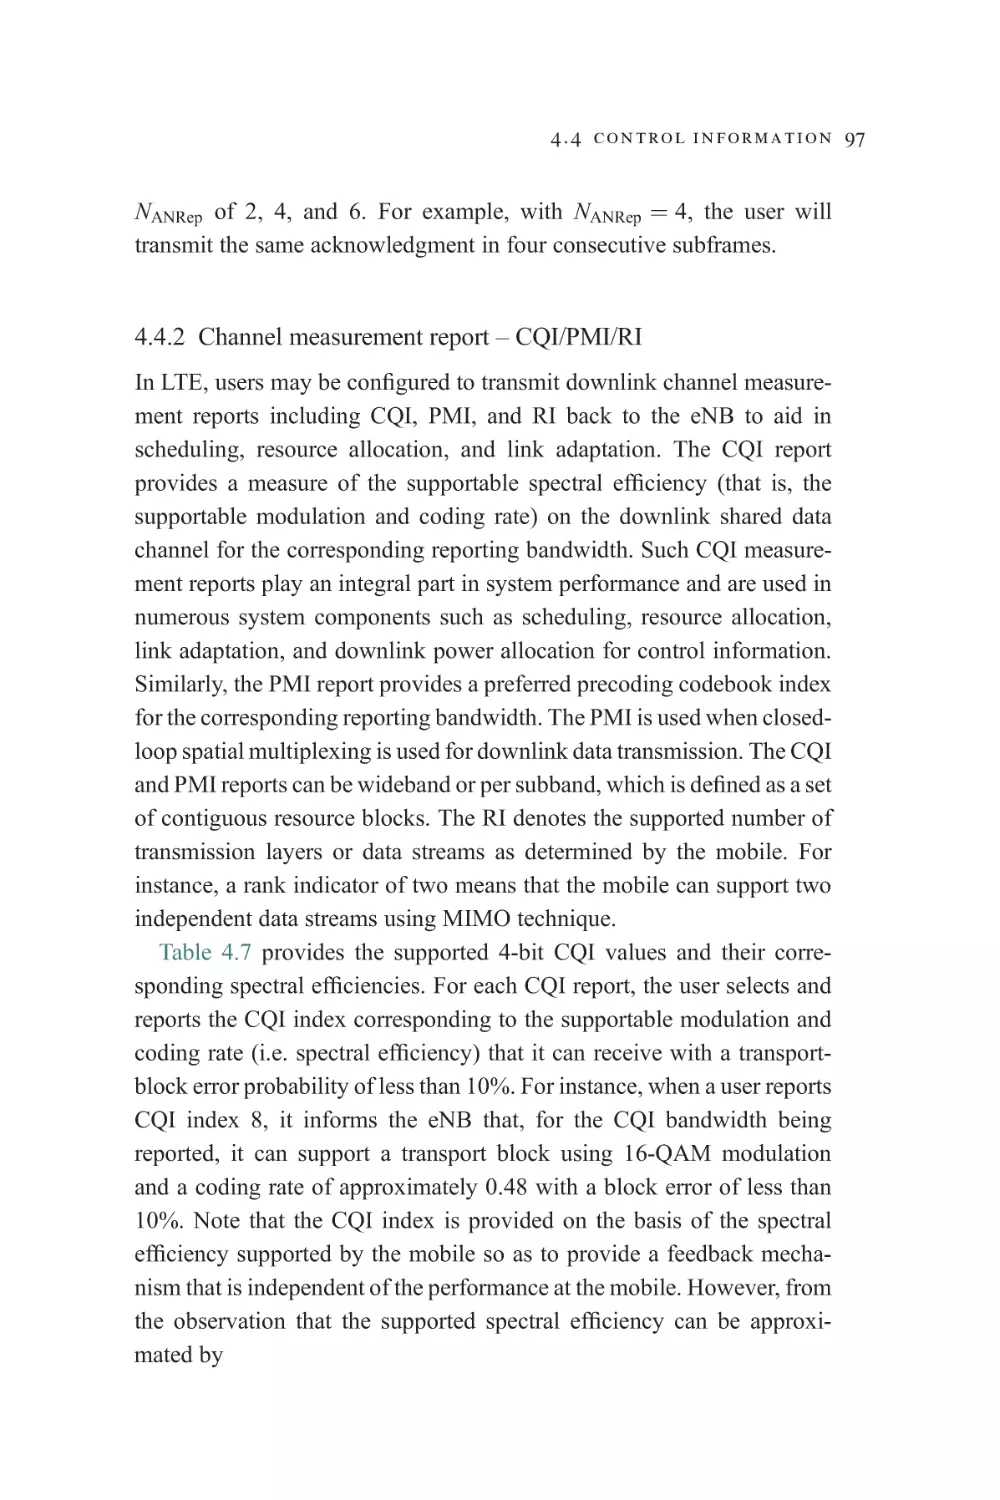 4.4.2 Channel measurement report – CQI/PMI/RI